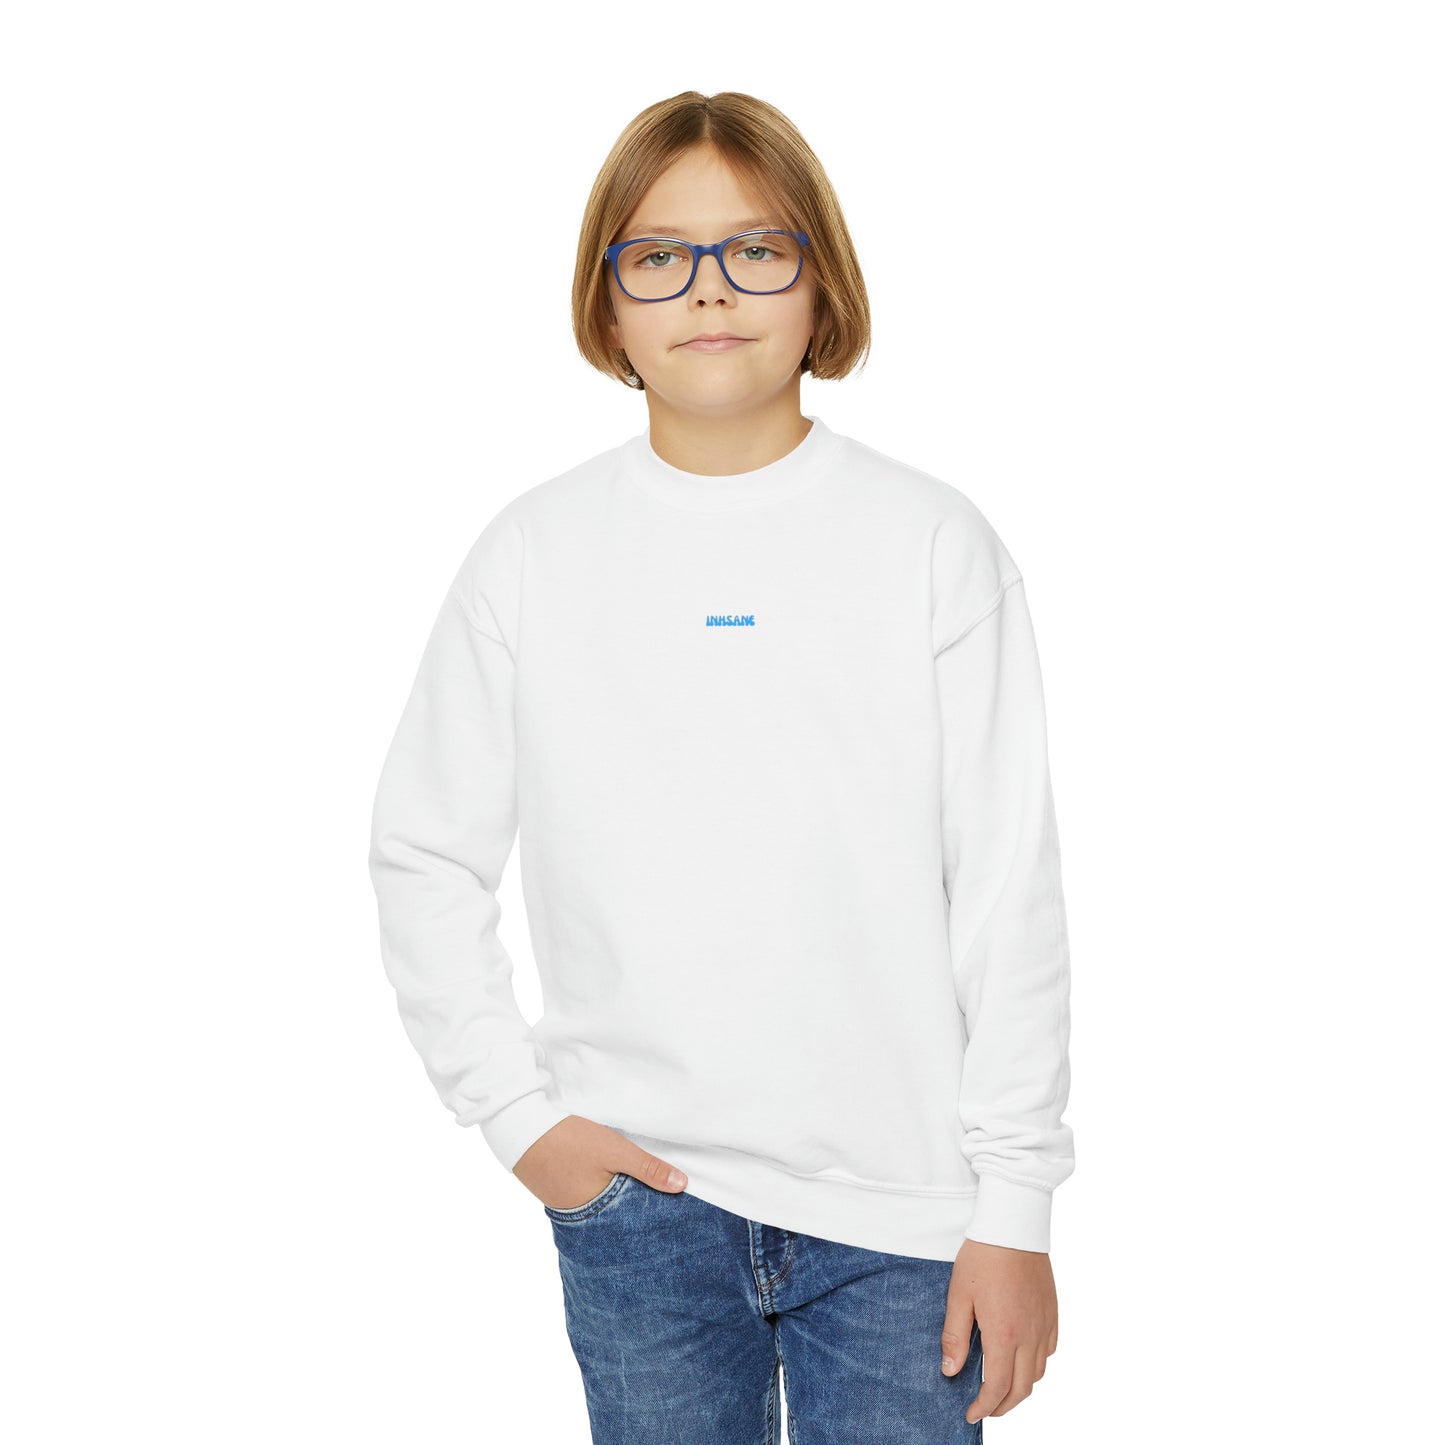 inhsane icon series 'icon star' sweatshirt KIDS